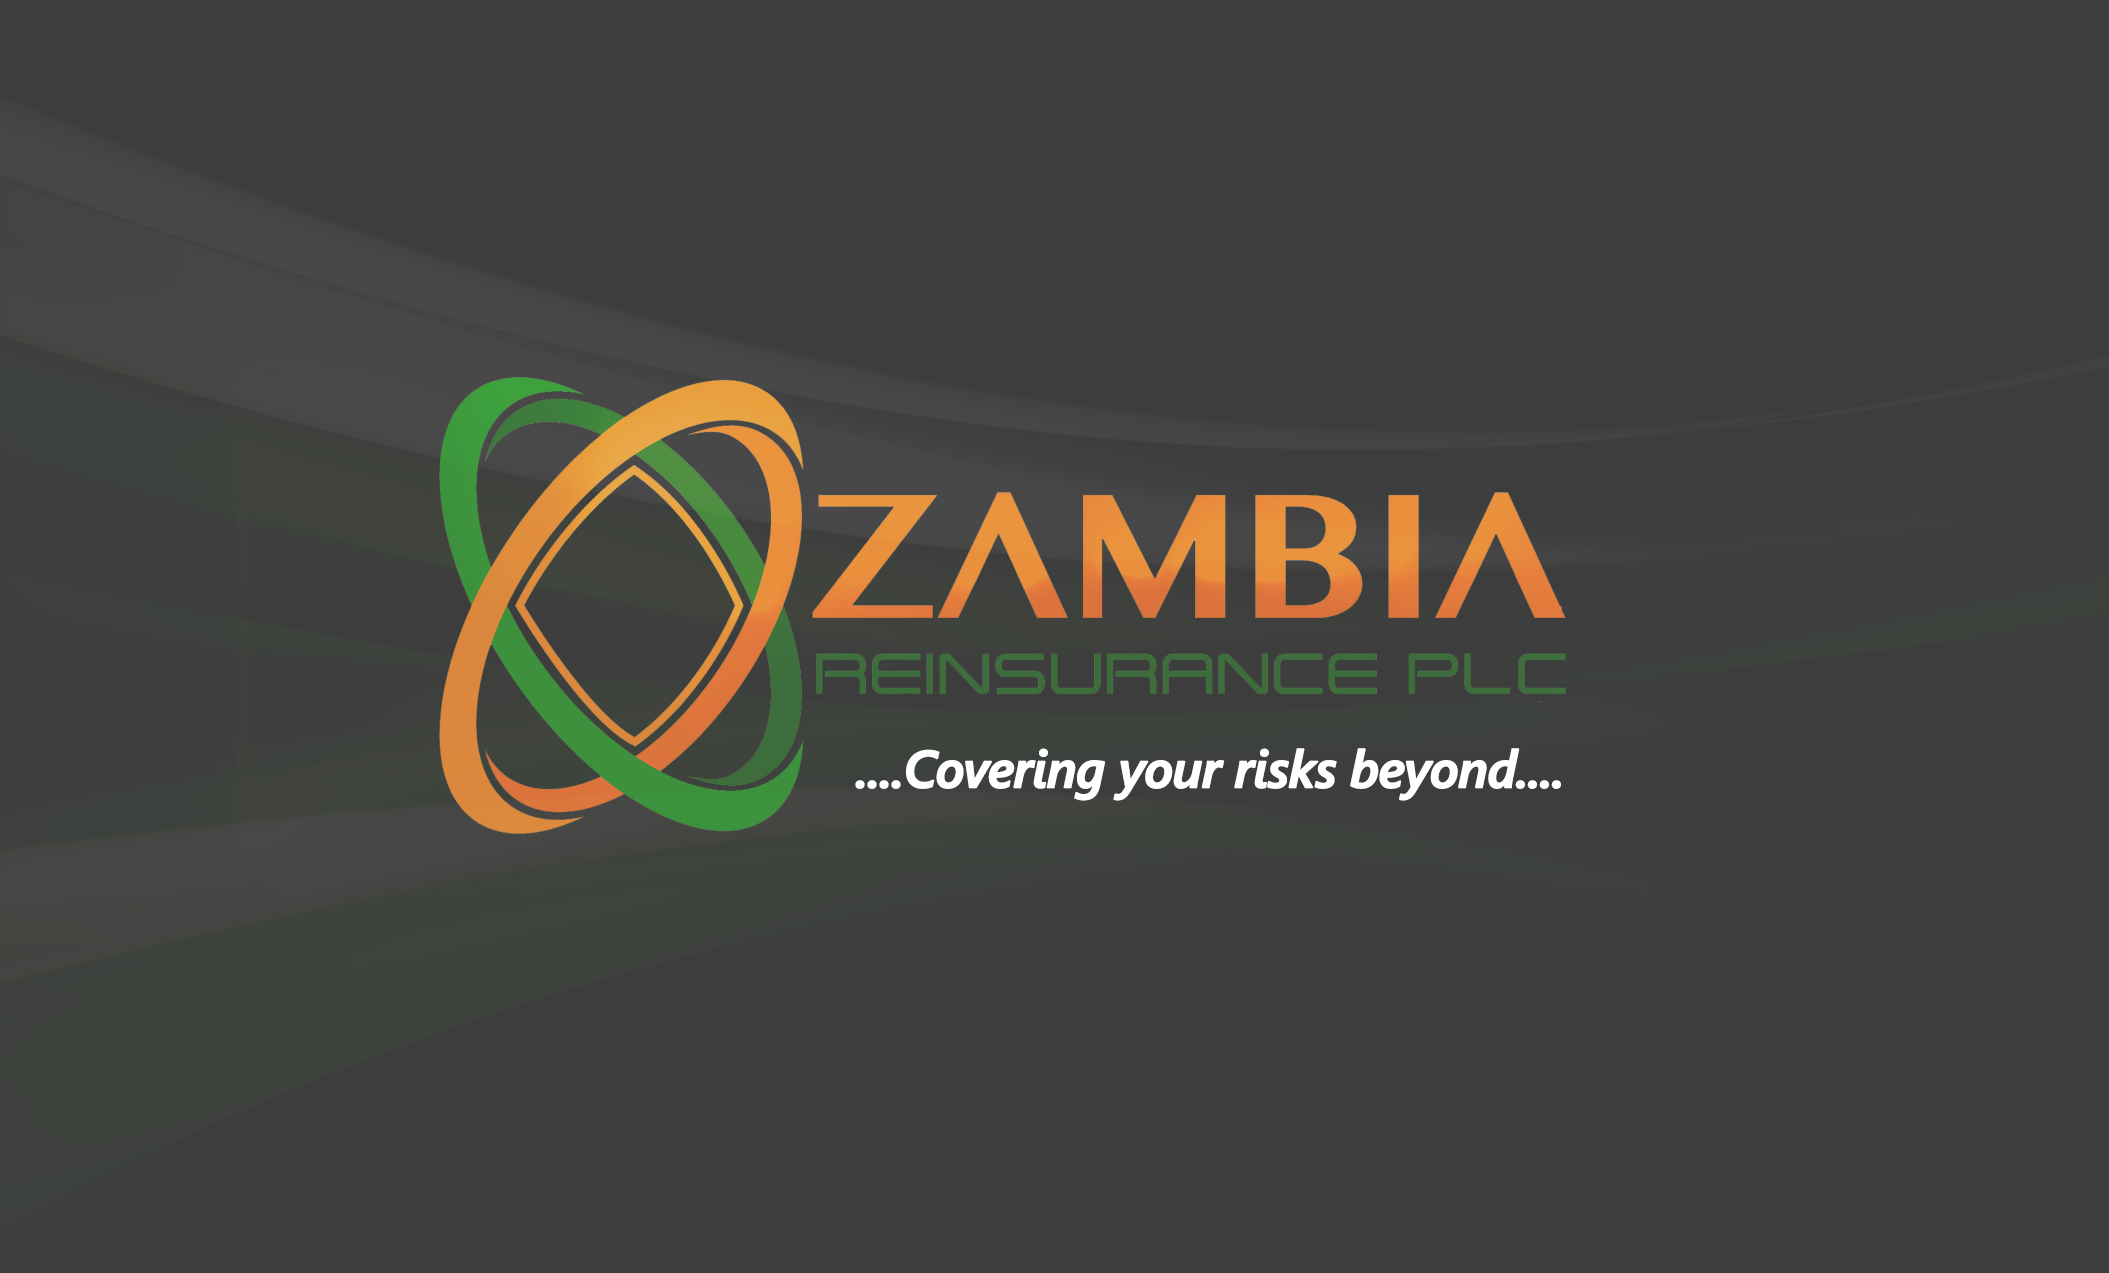 Zambia Re